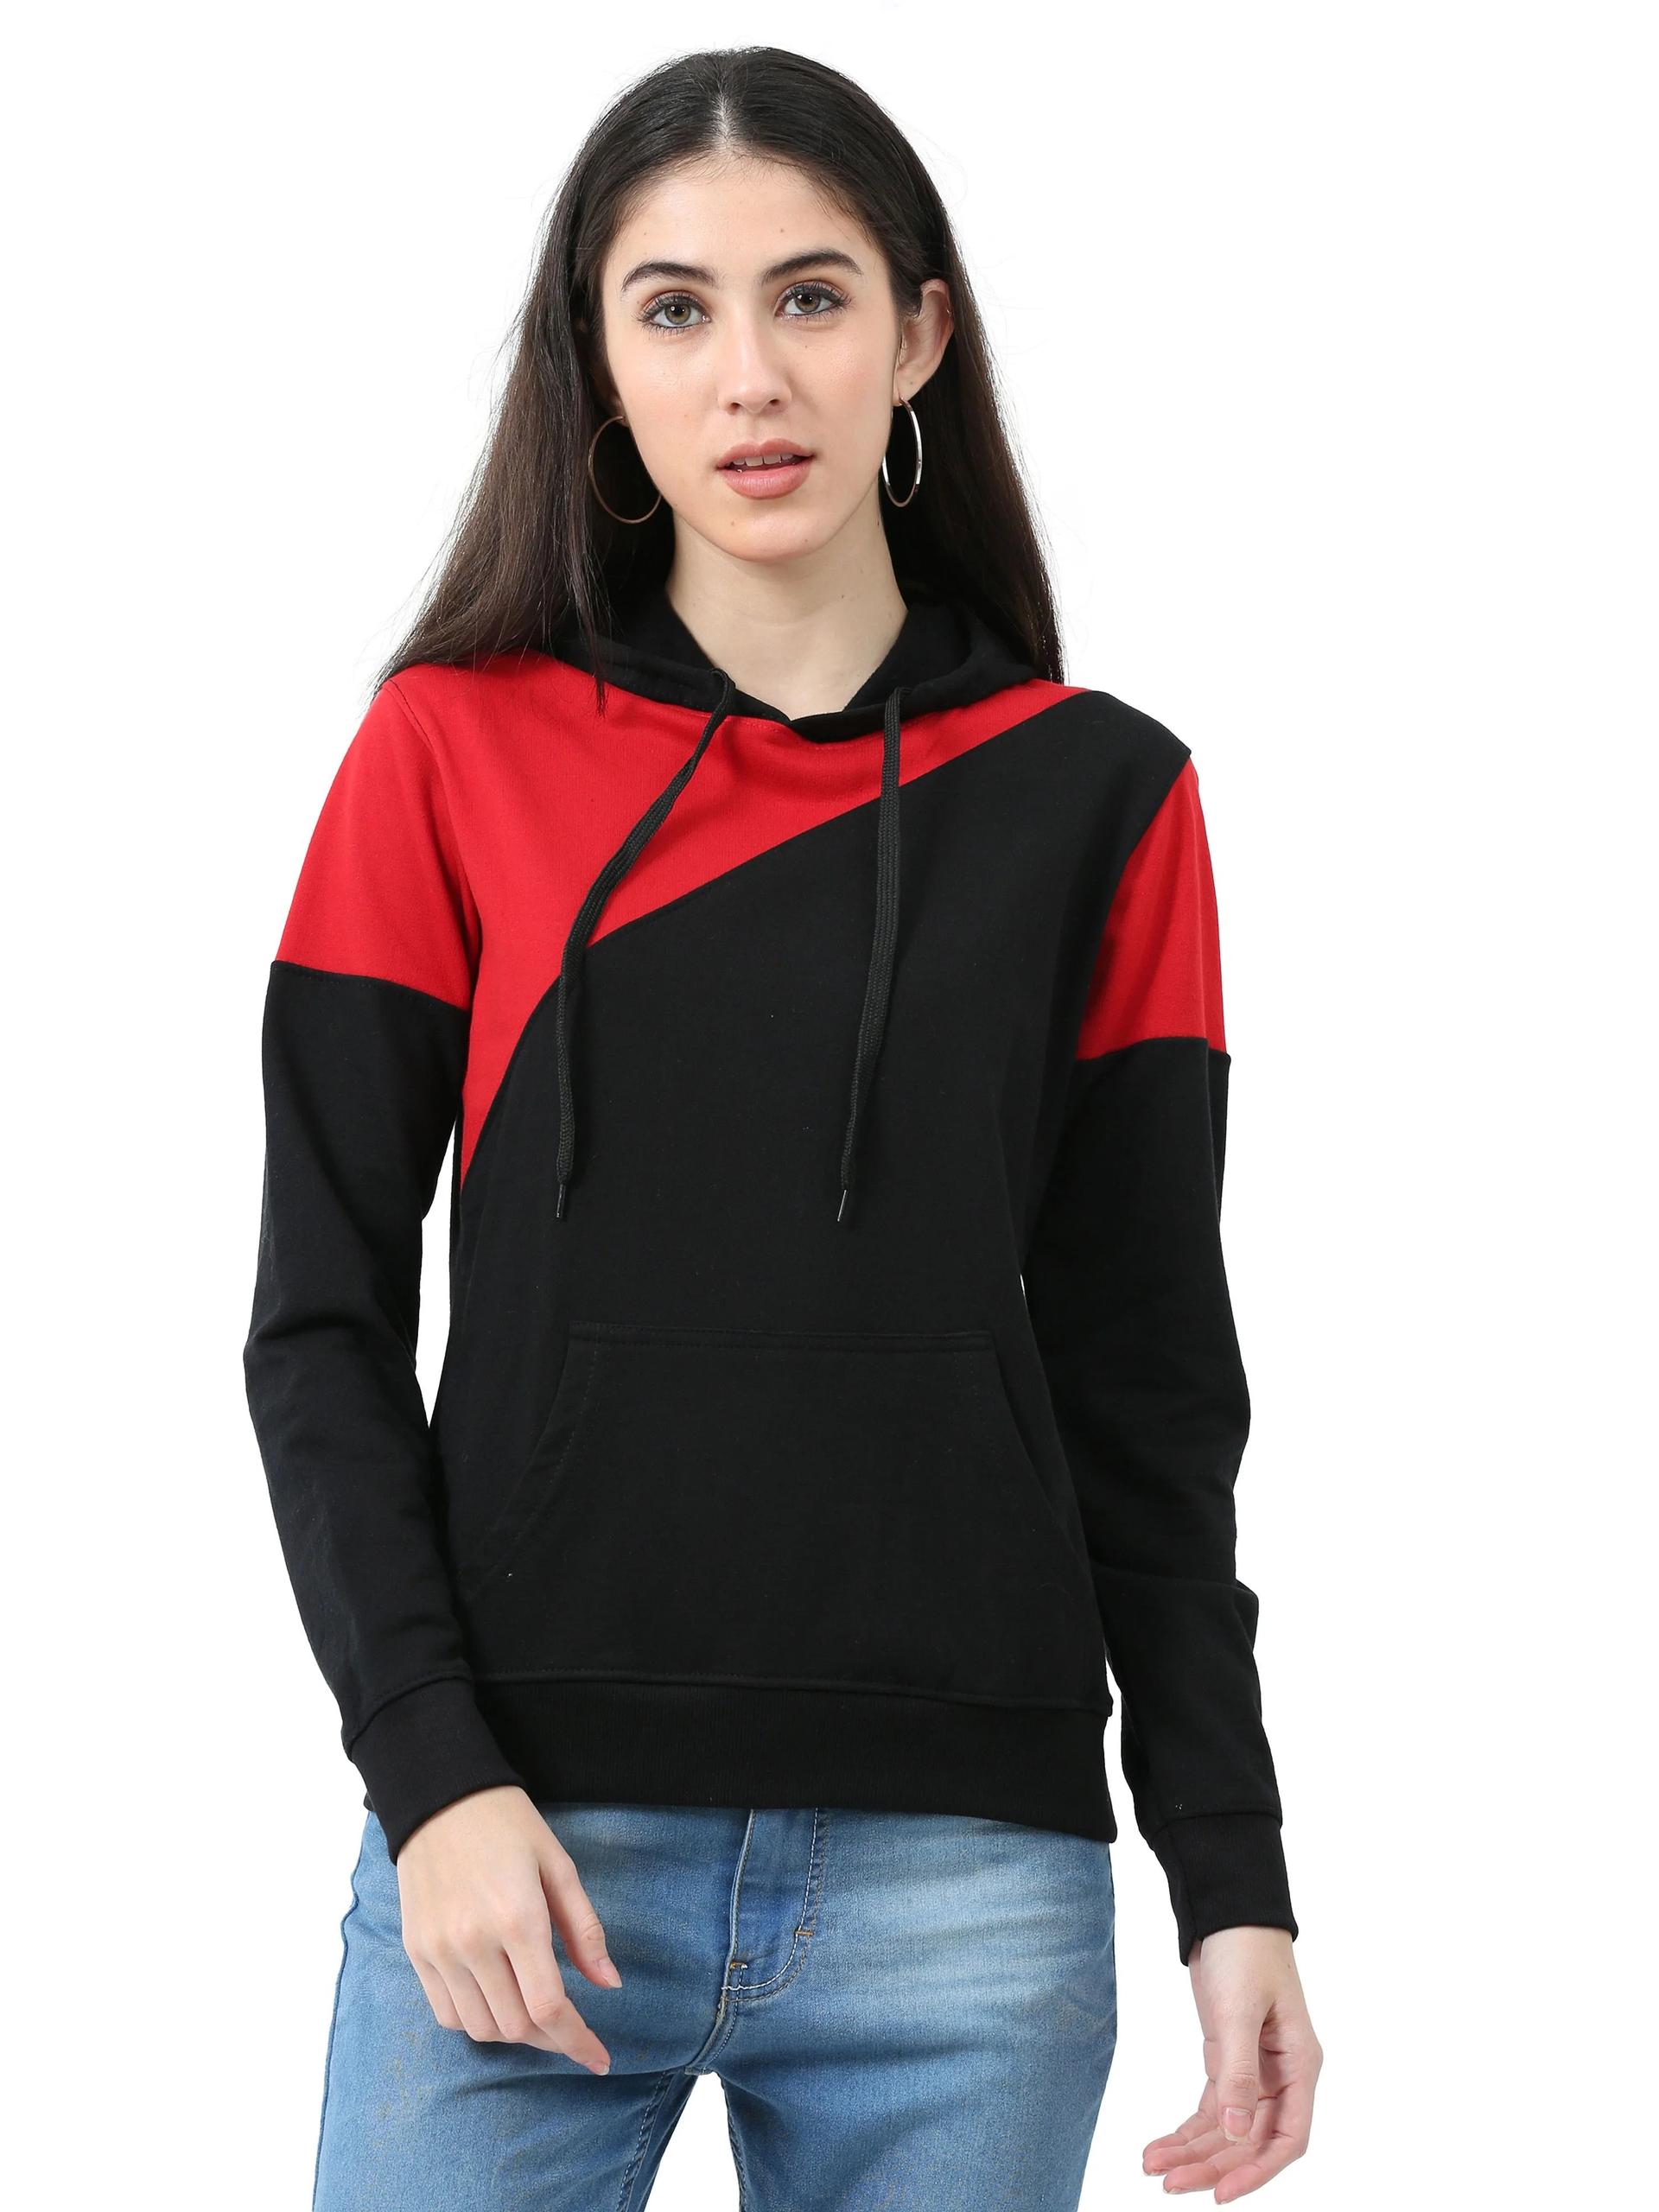 women's-cotton-color-block--sweatshirt-hoodies